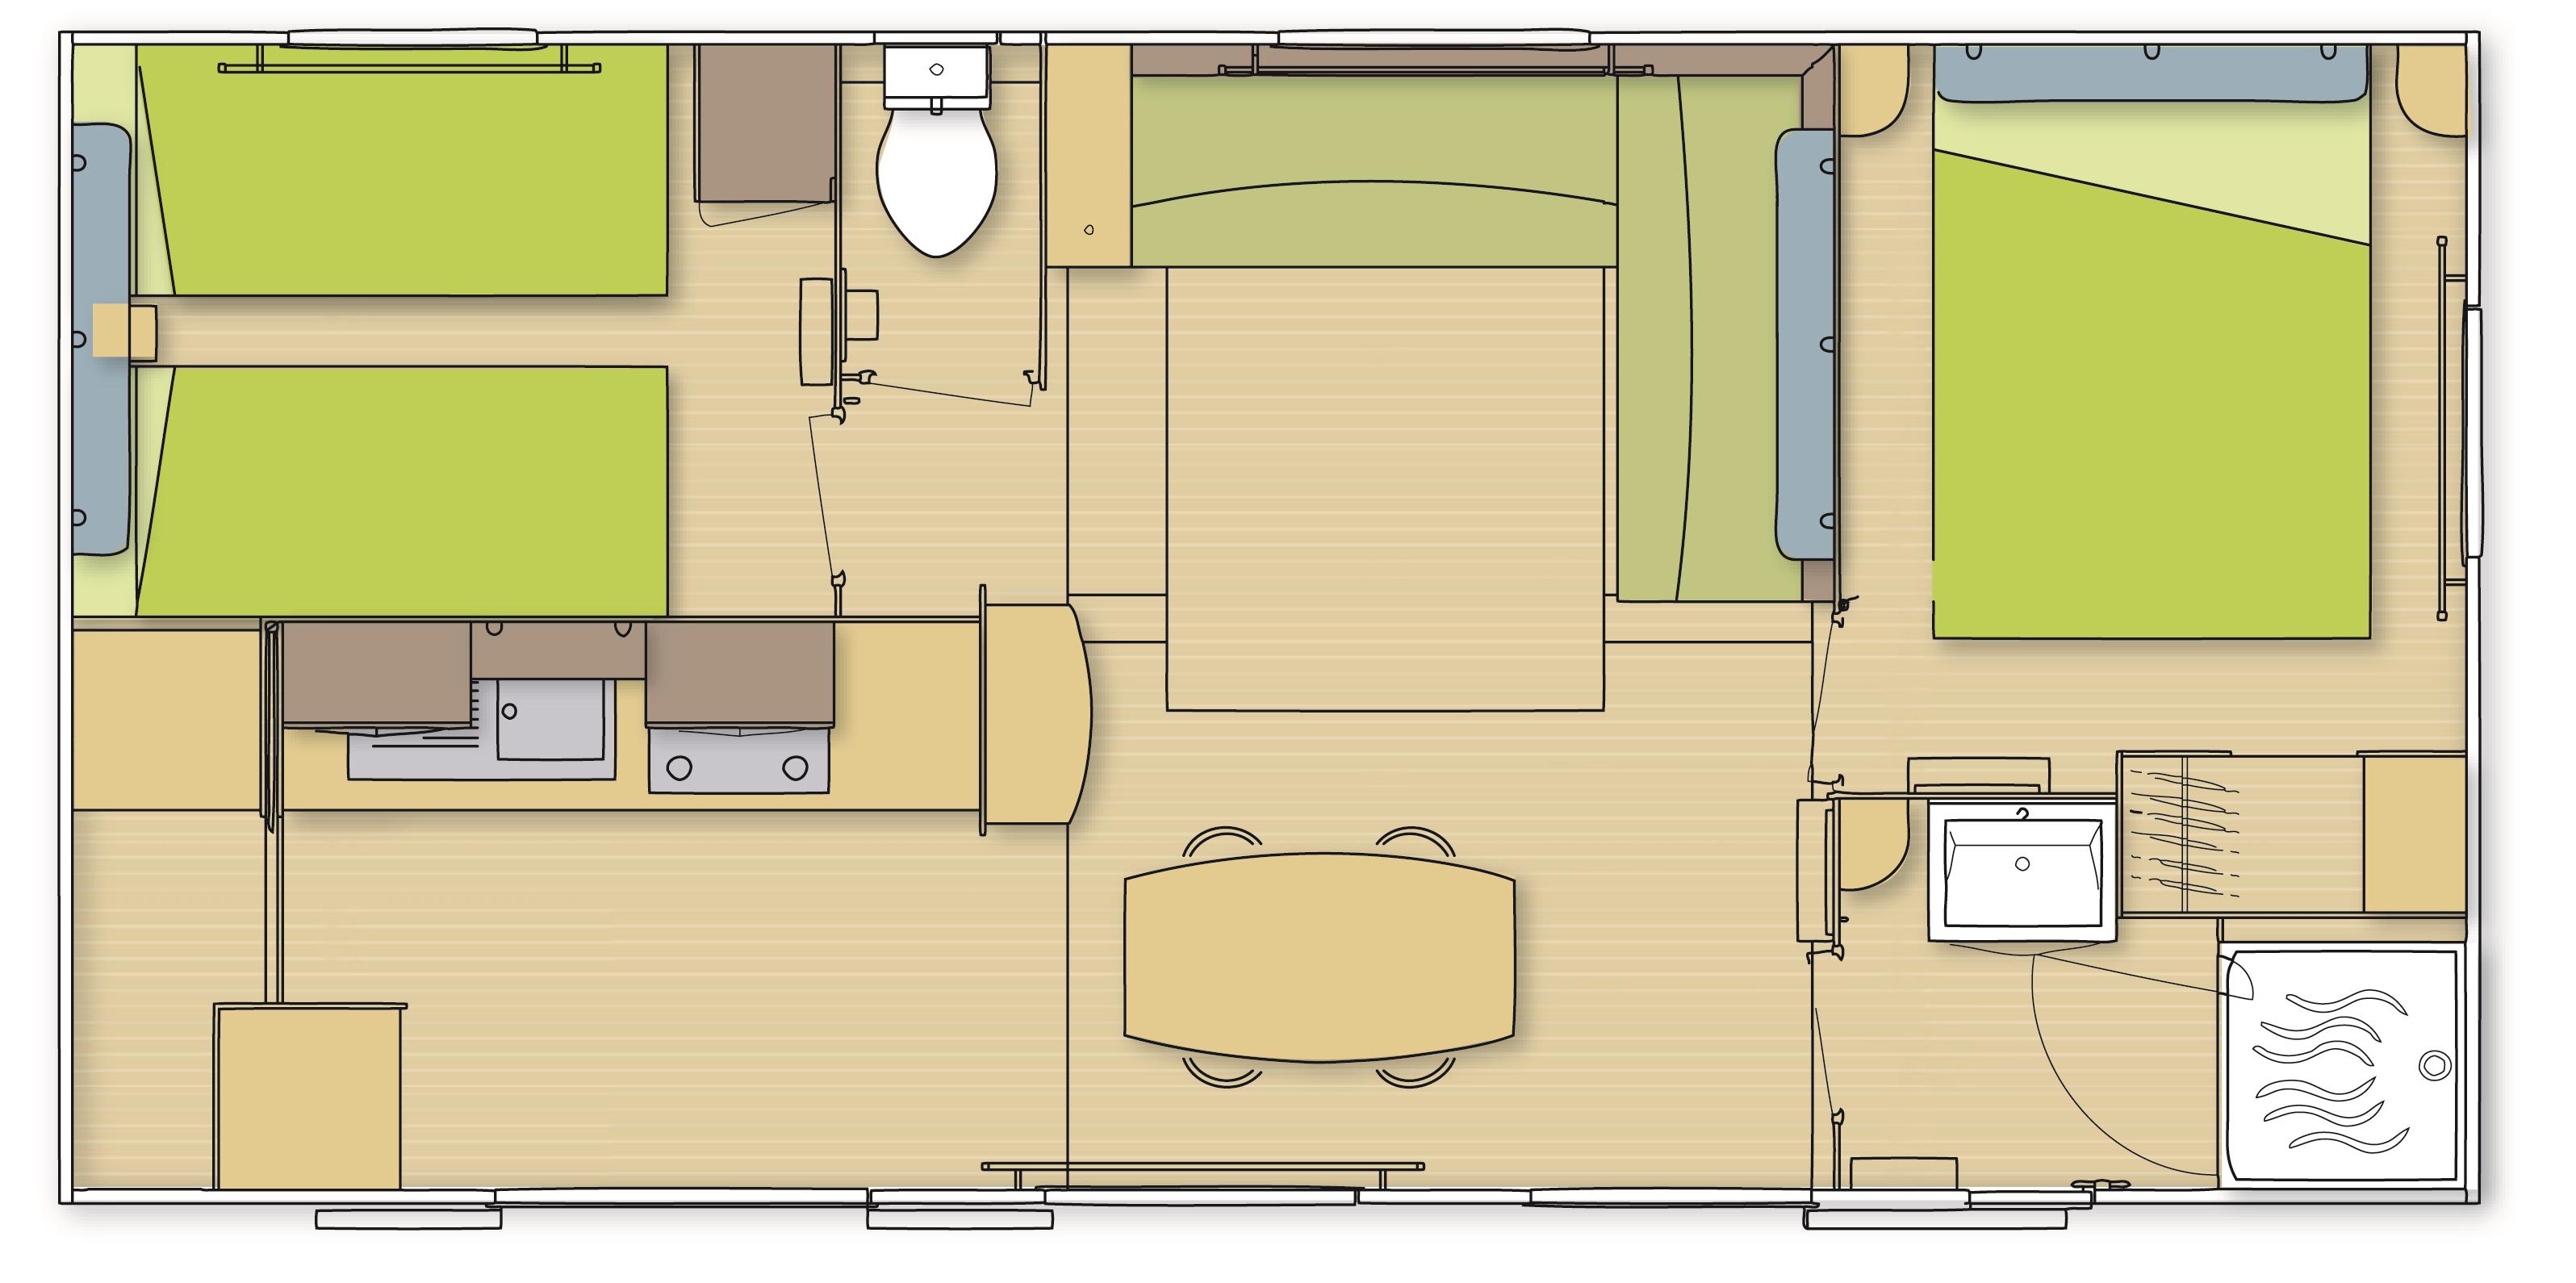 Cottage Confort 29 à 31m² – 2 slaapkamers 2/4 pers.